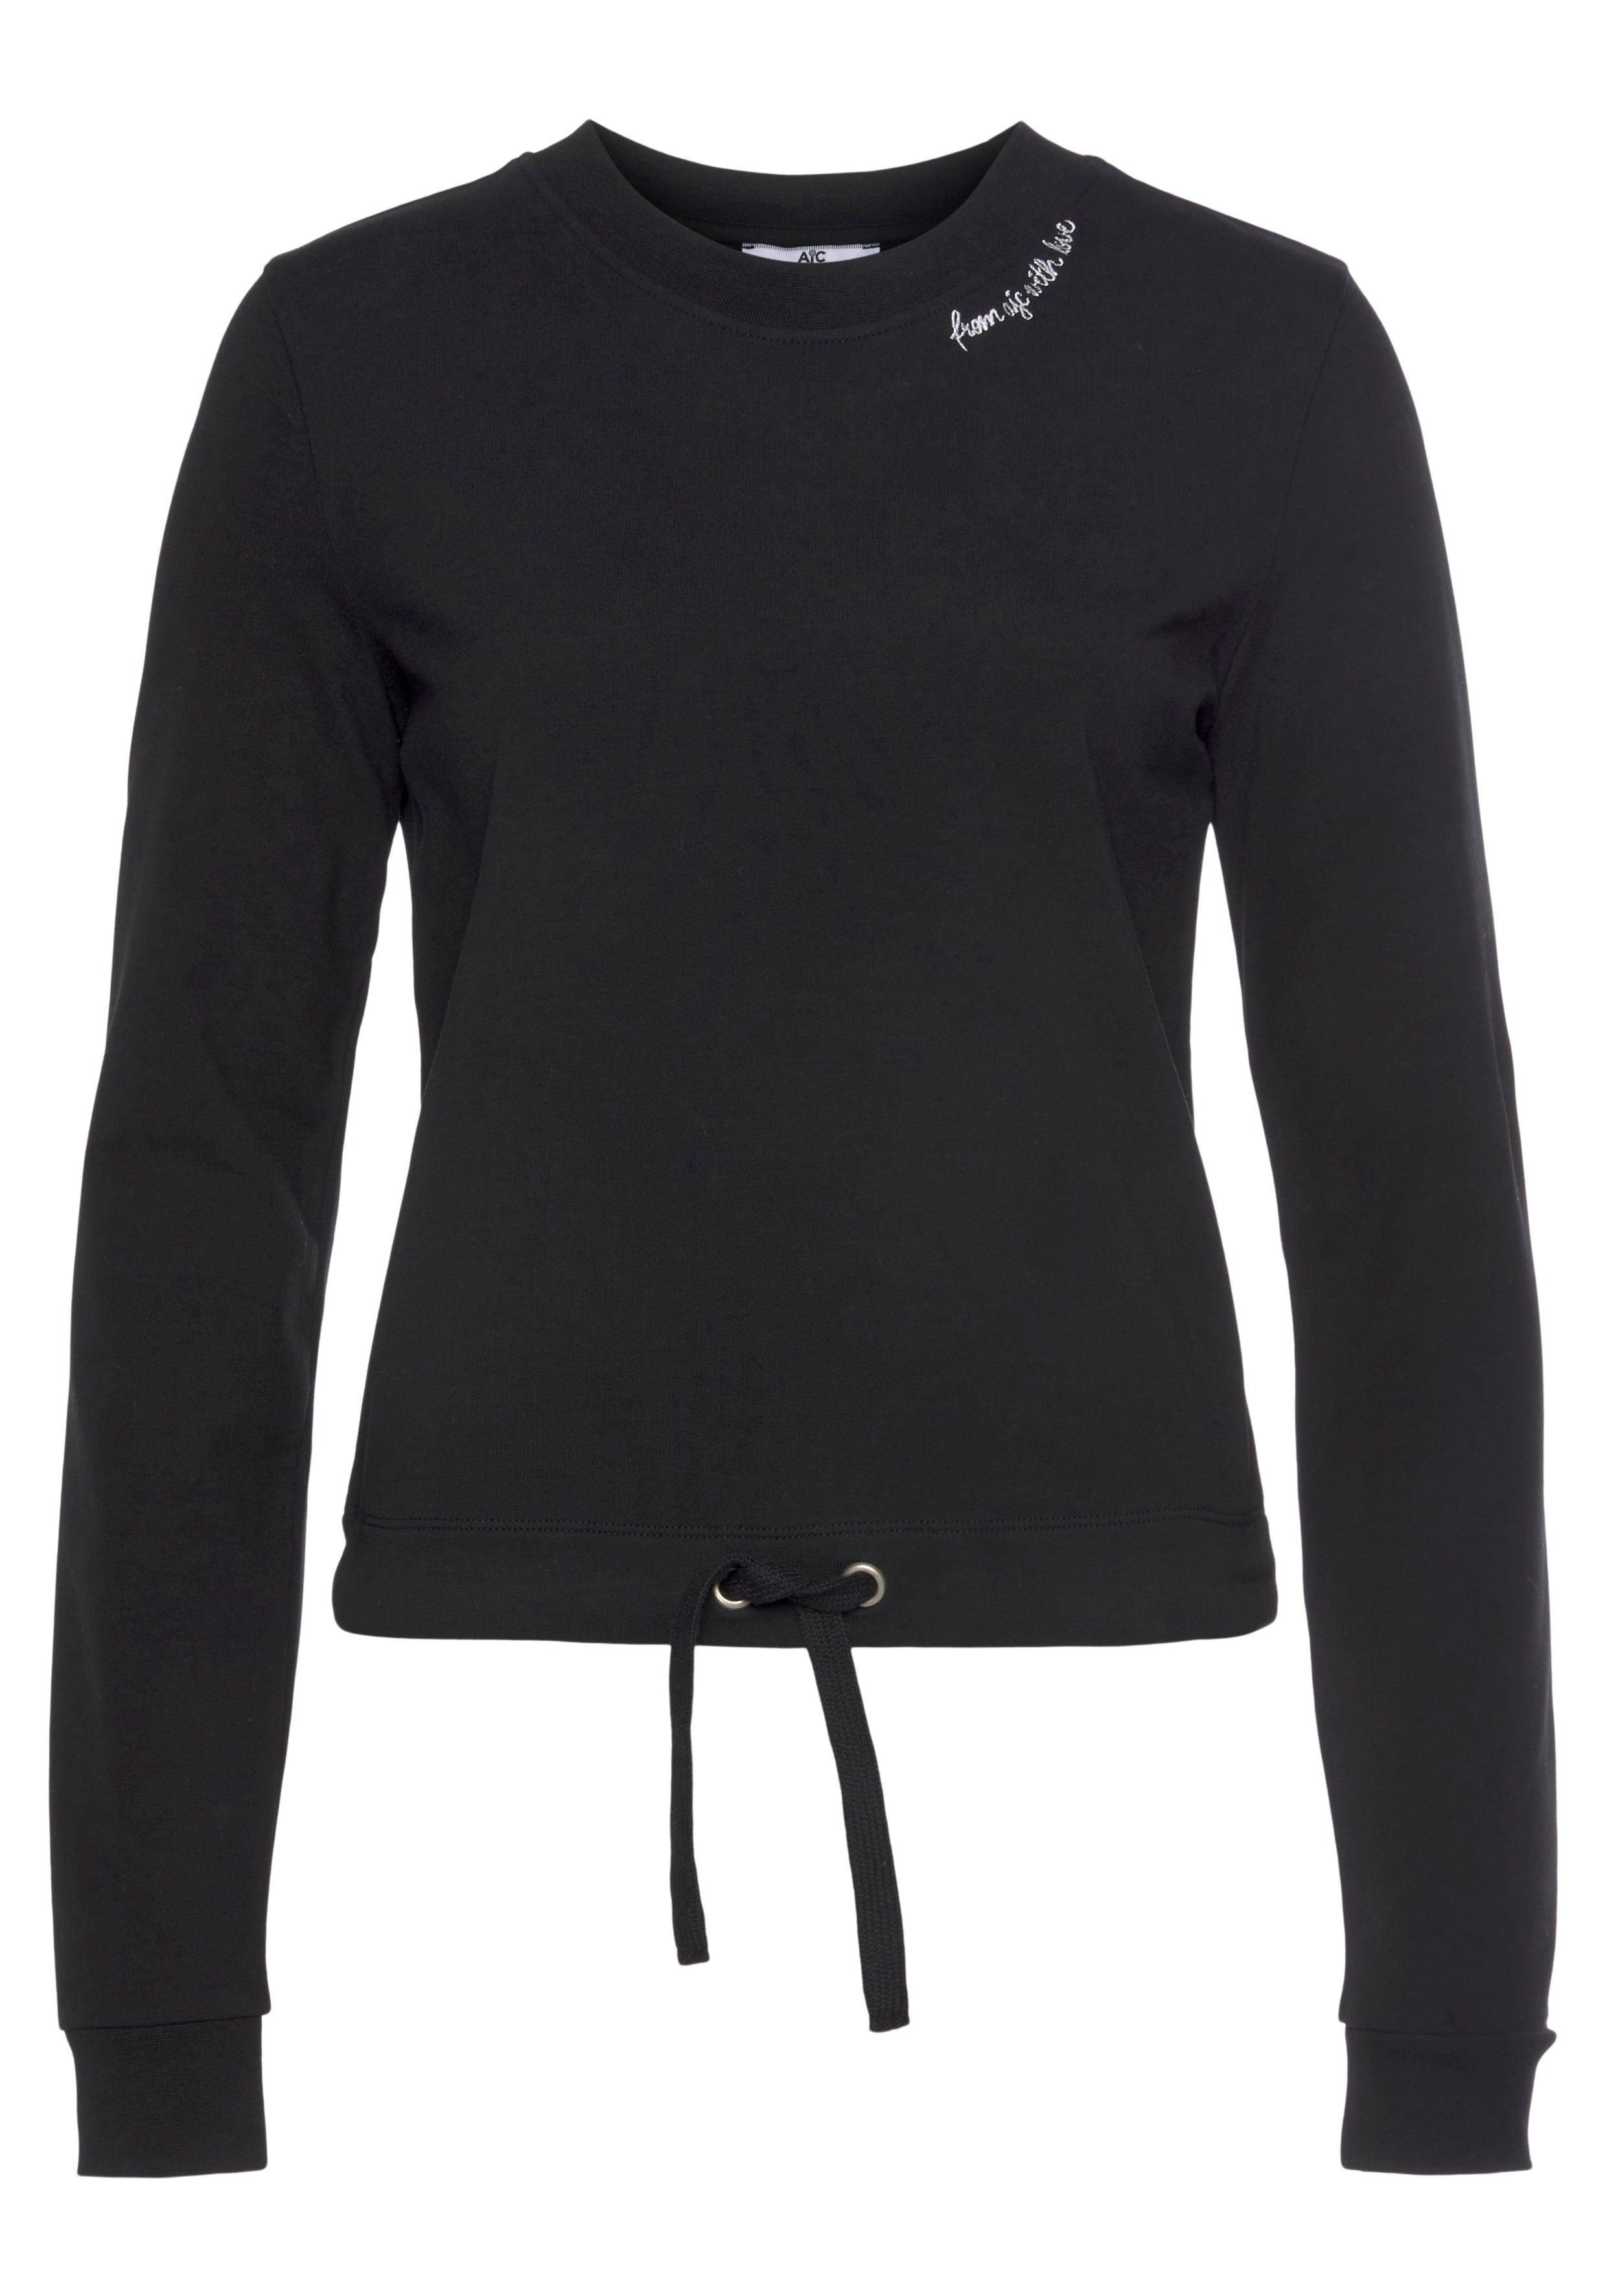 Damen Pullover AJC Sweatshirt mit trendiger Wording-Stickerei